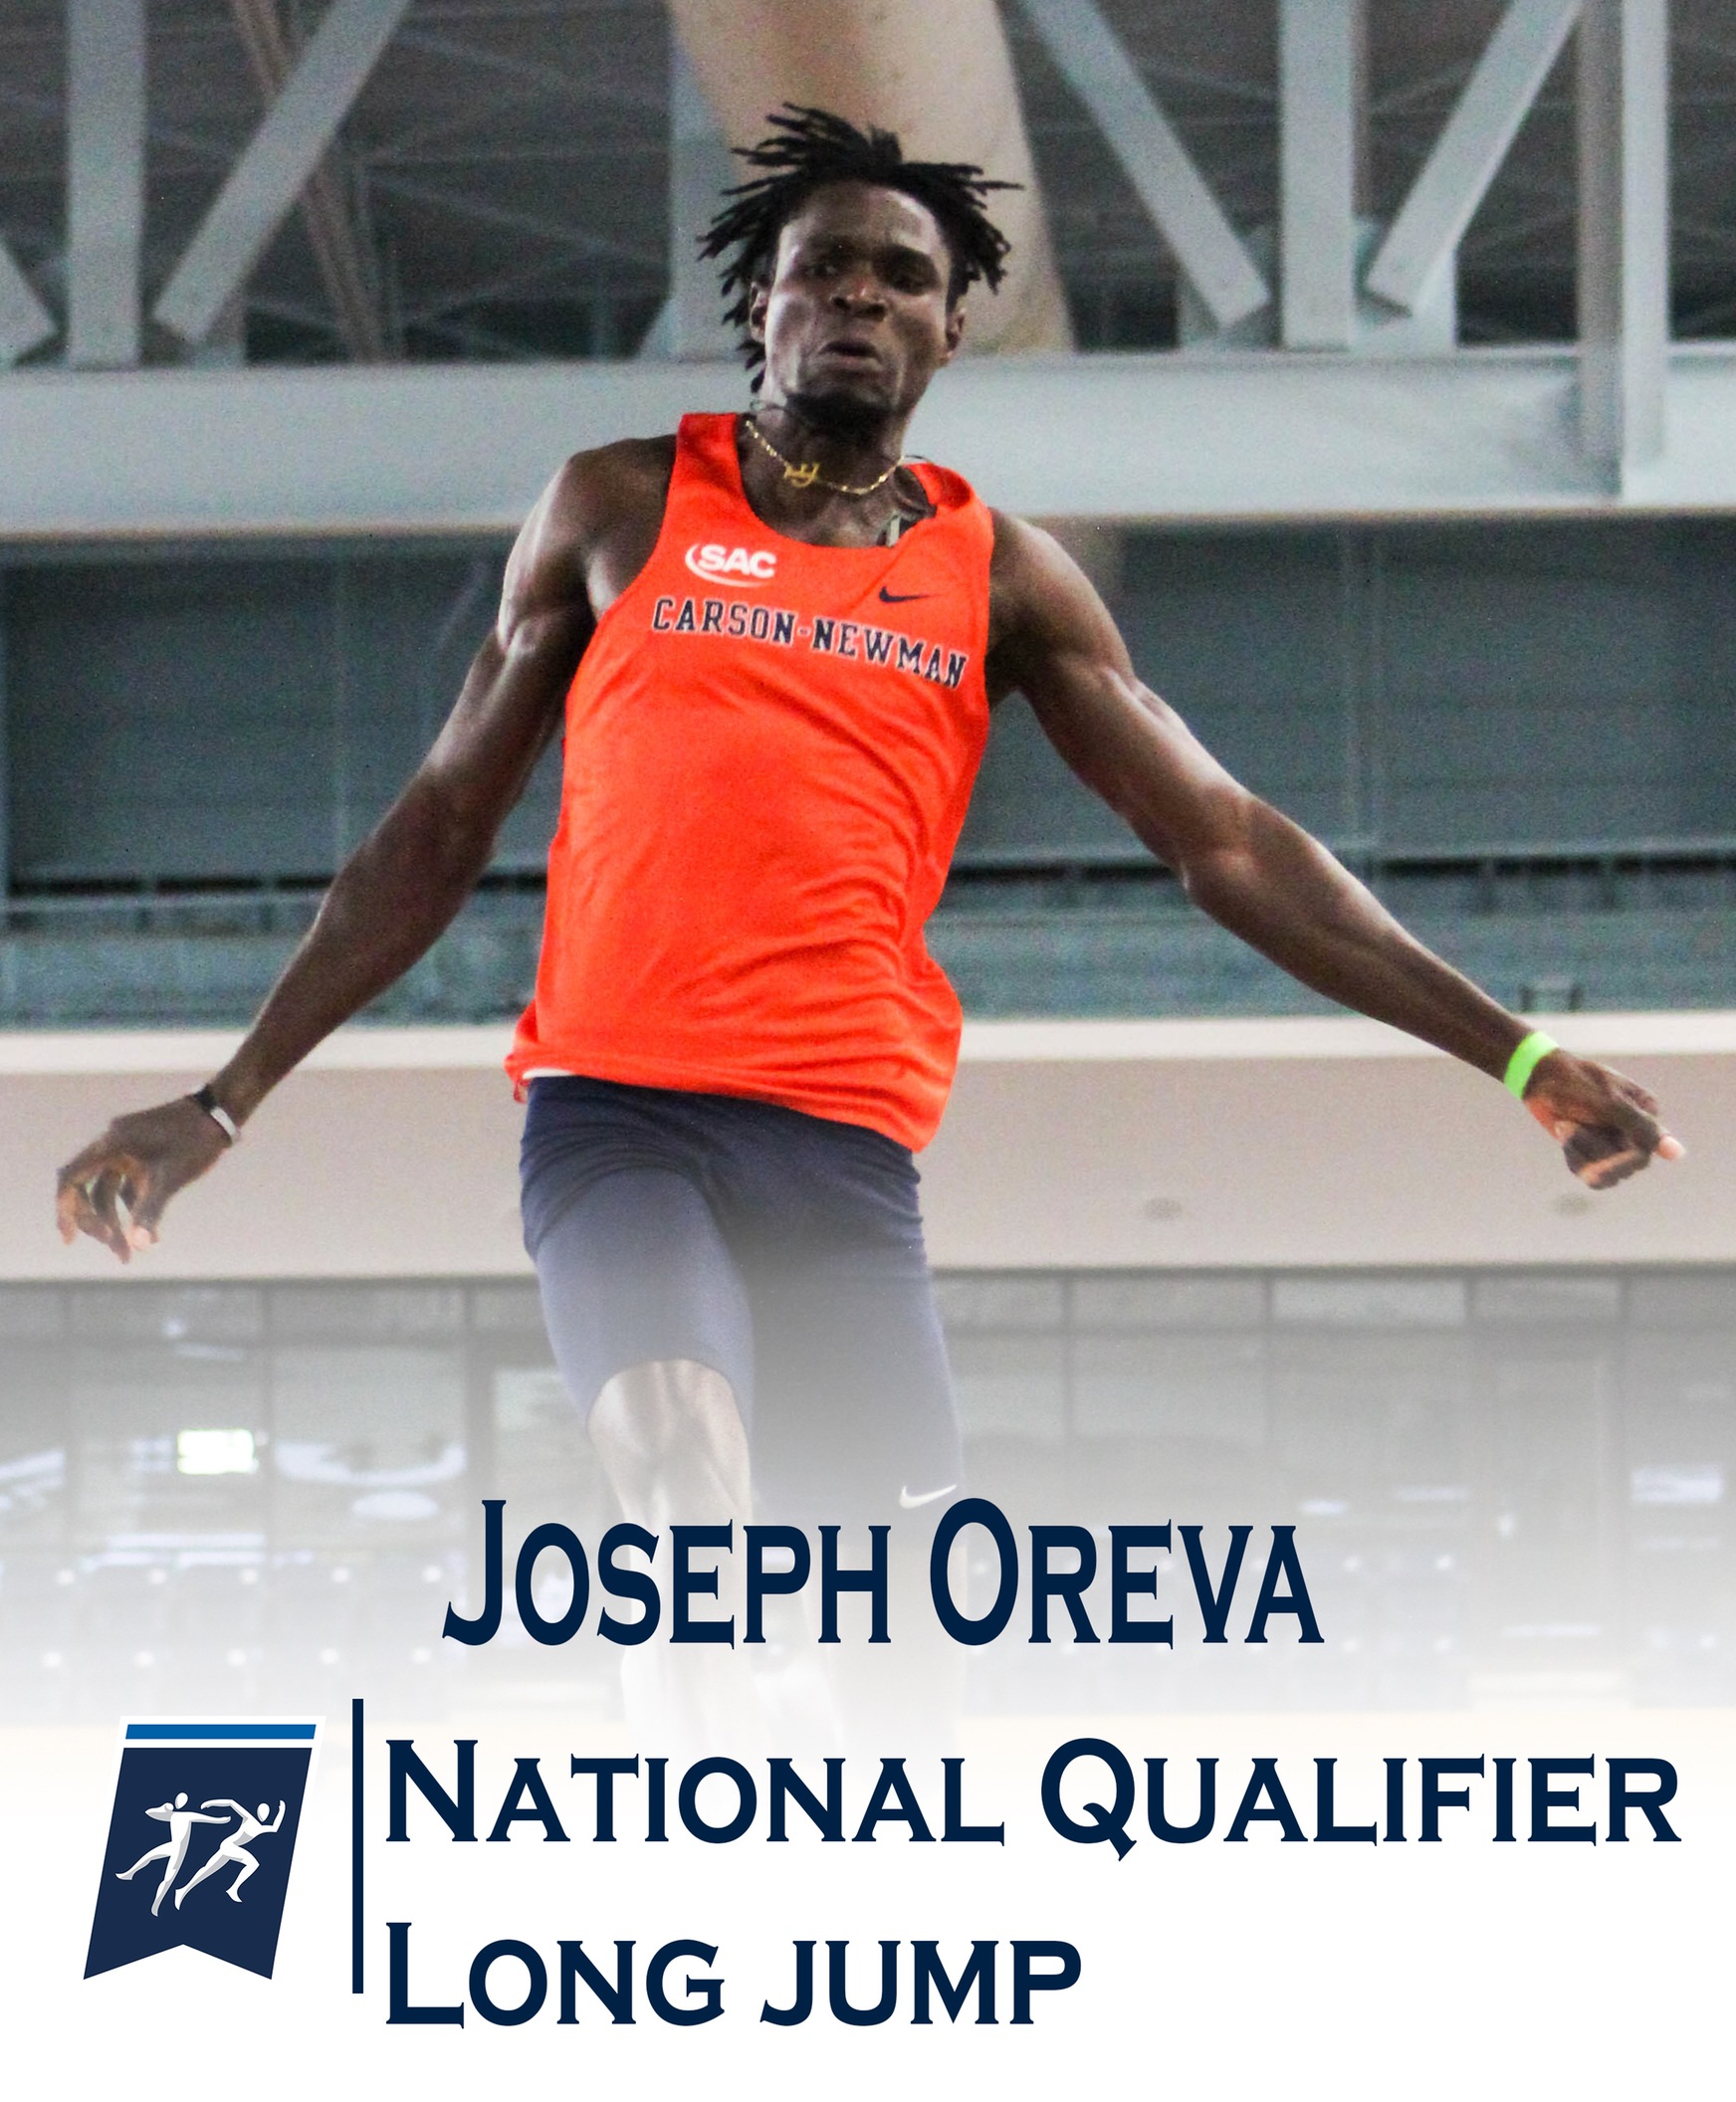 Joseph Oreva qualifies for NCAA D-II Indoor Championships